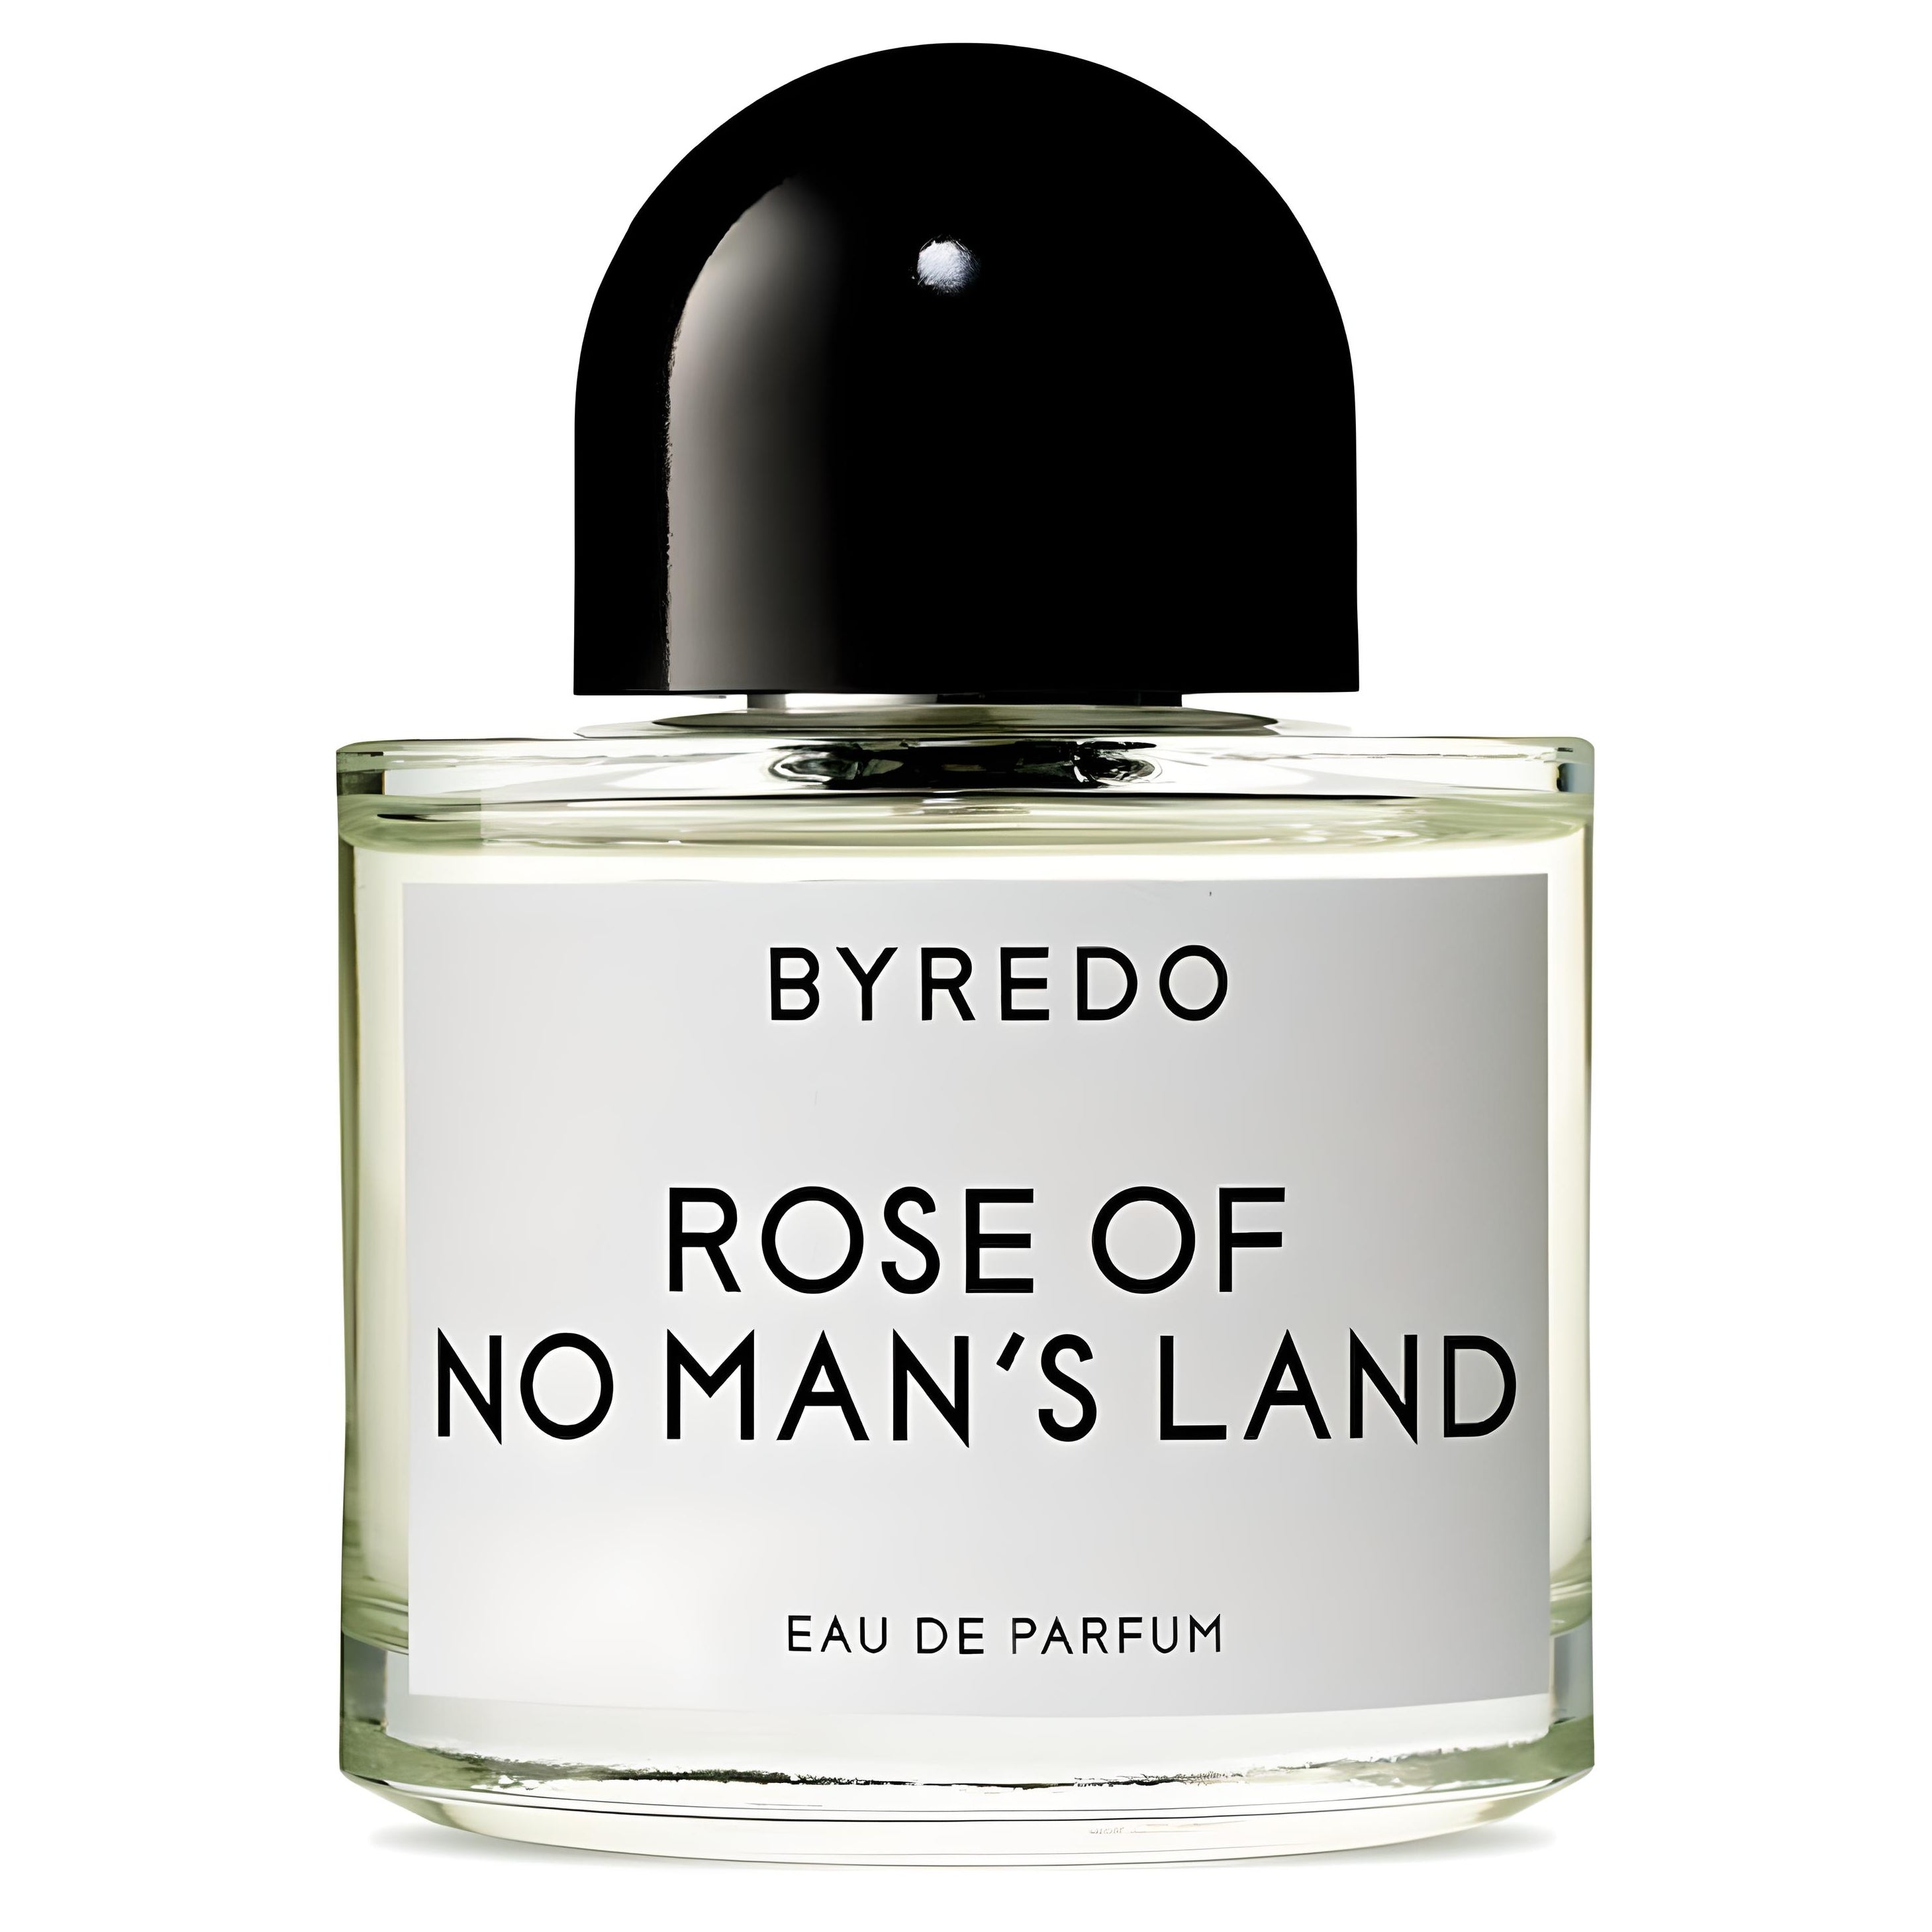 Rose Of No Man's Land Eau de Parfum Eau de Parfum BYREDO   